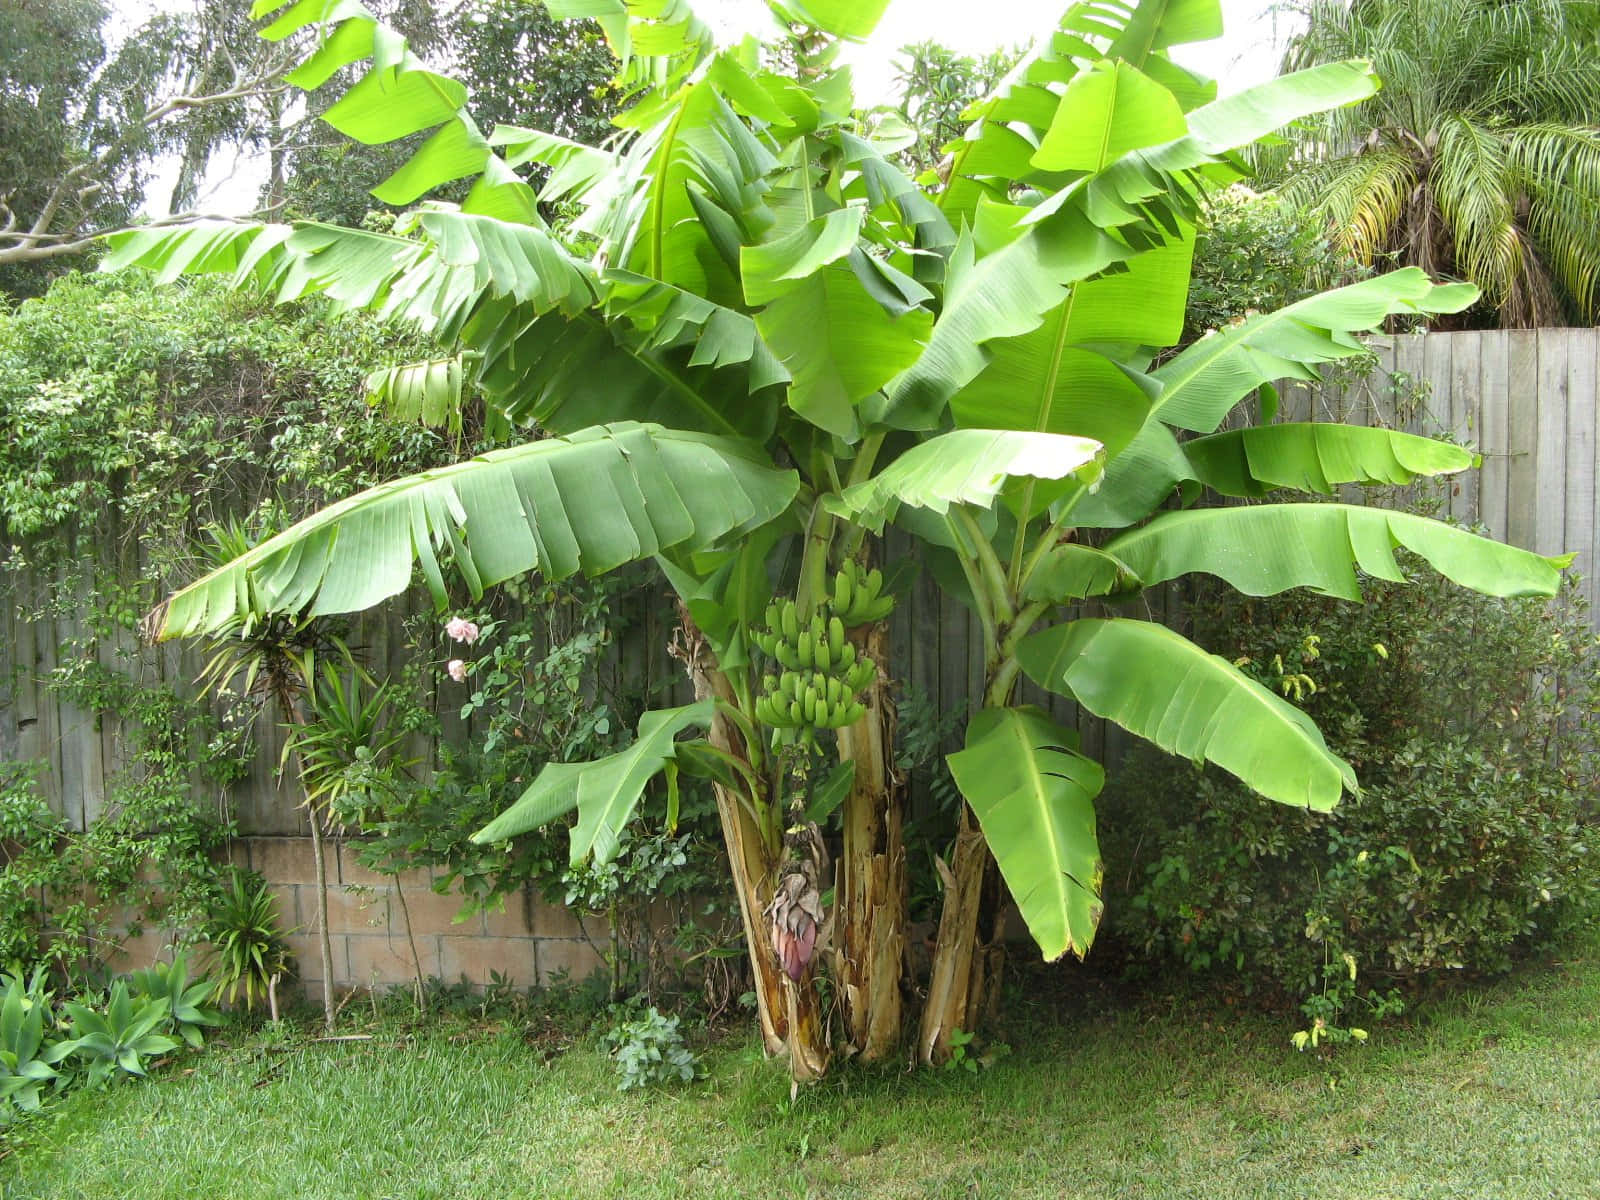 A lush banana tree providing nutrition and shelter to wildlife